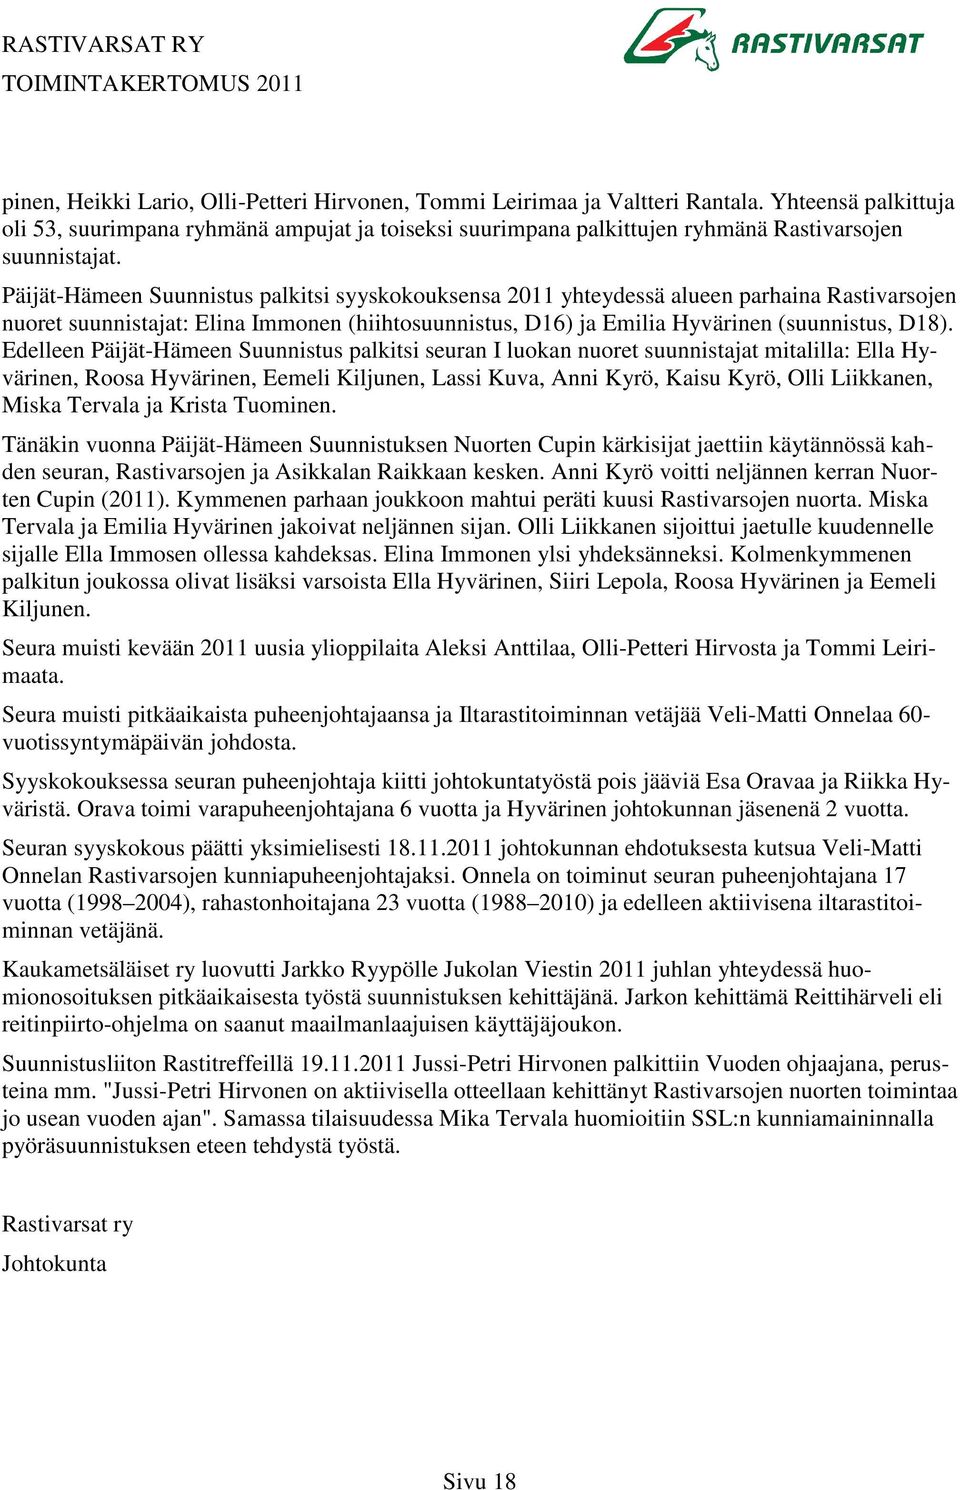 Päijät-Hämeen Suunnistus palkitsi syyskokouksensa 2011 yhteydessä alueen parhaina Rastivarsojen nuoret suunnistajat: Elina Immonen (hiihtosuunnistus, D16) ja Emilia Hyvärinen (suunnistus, D18).